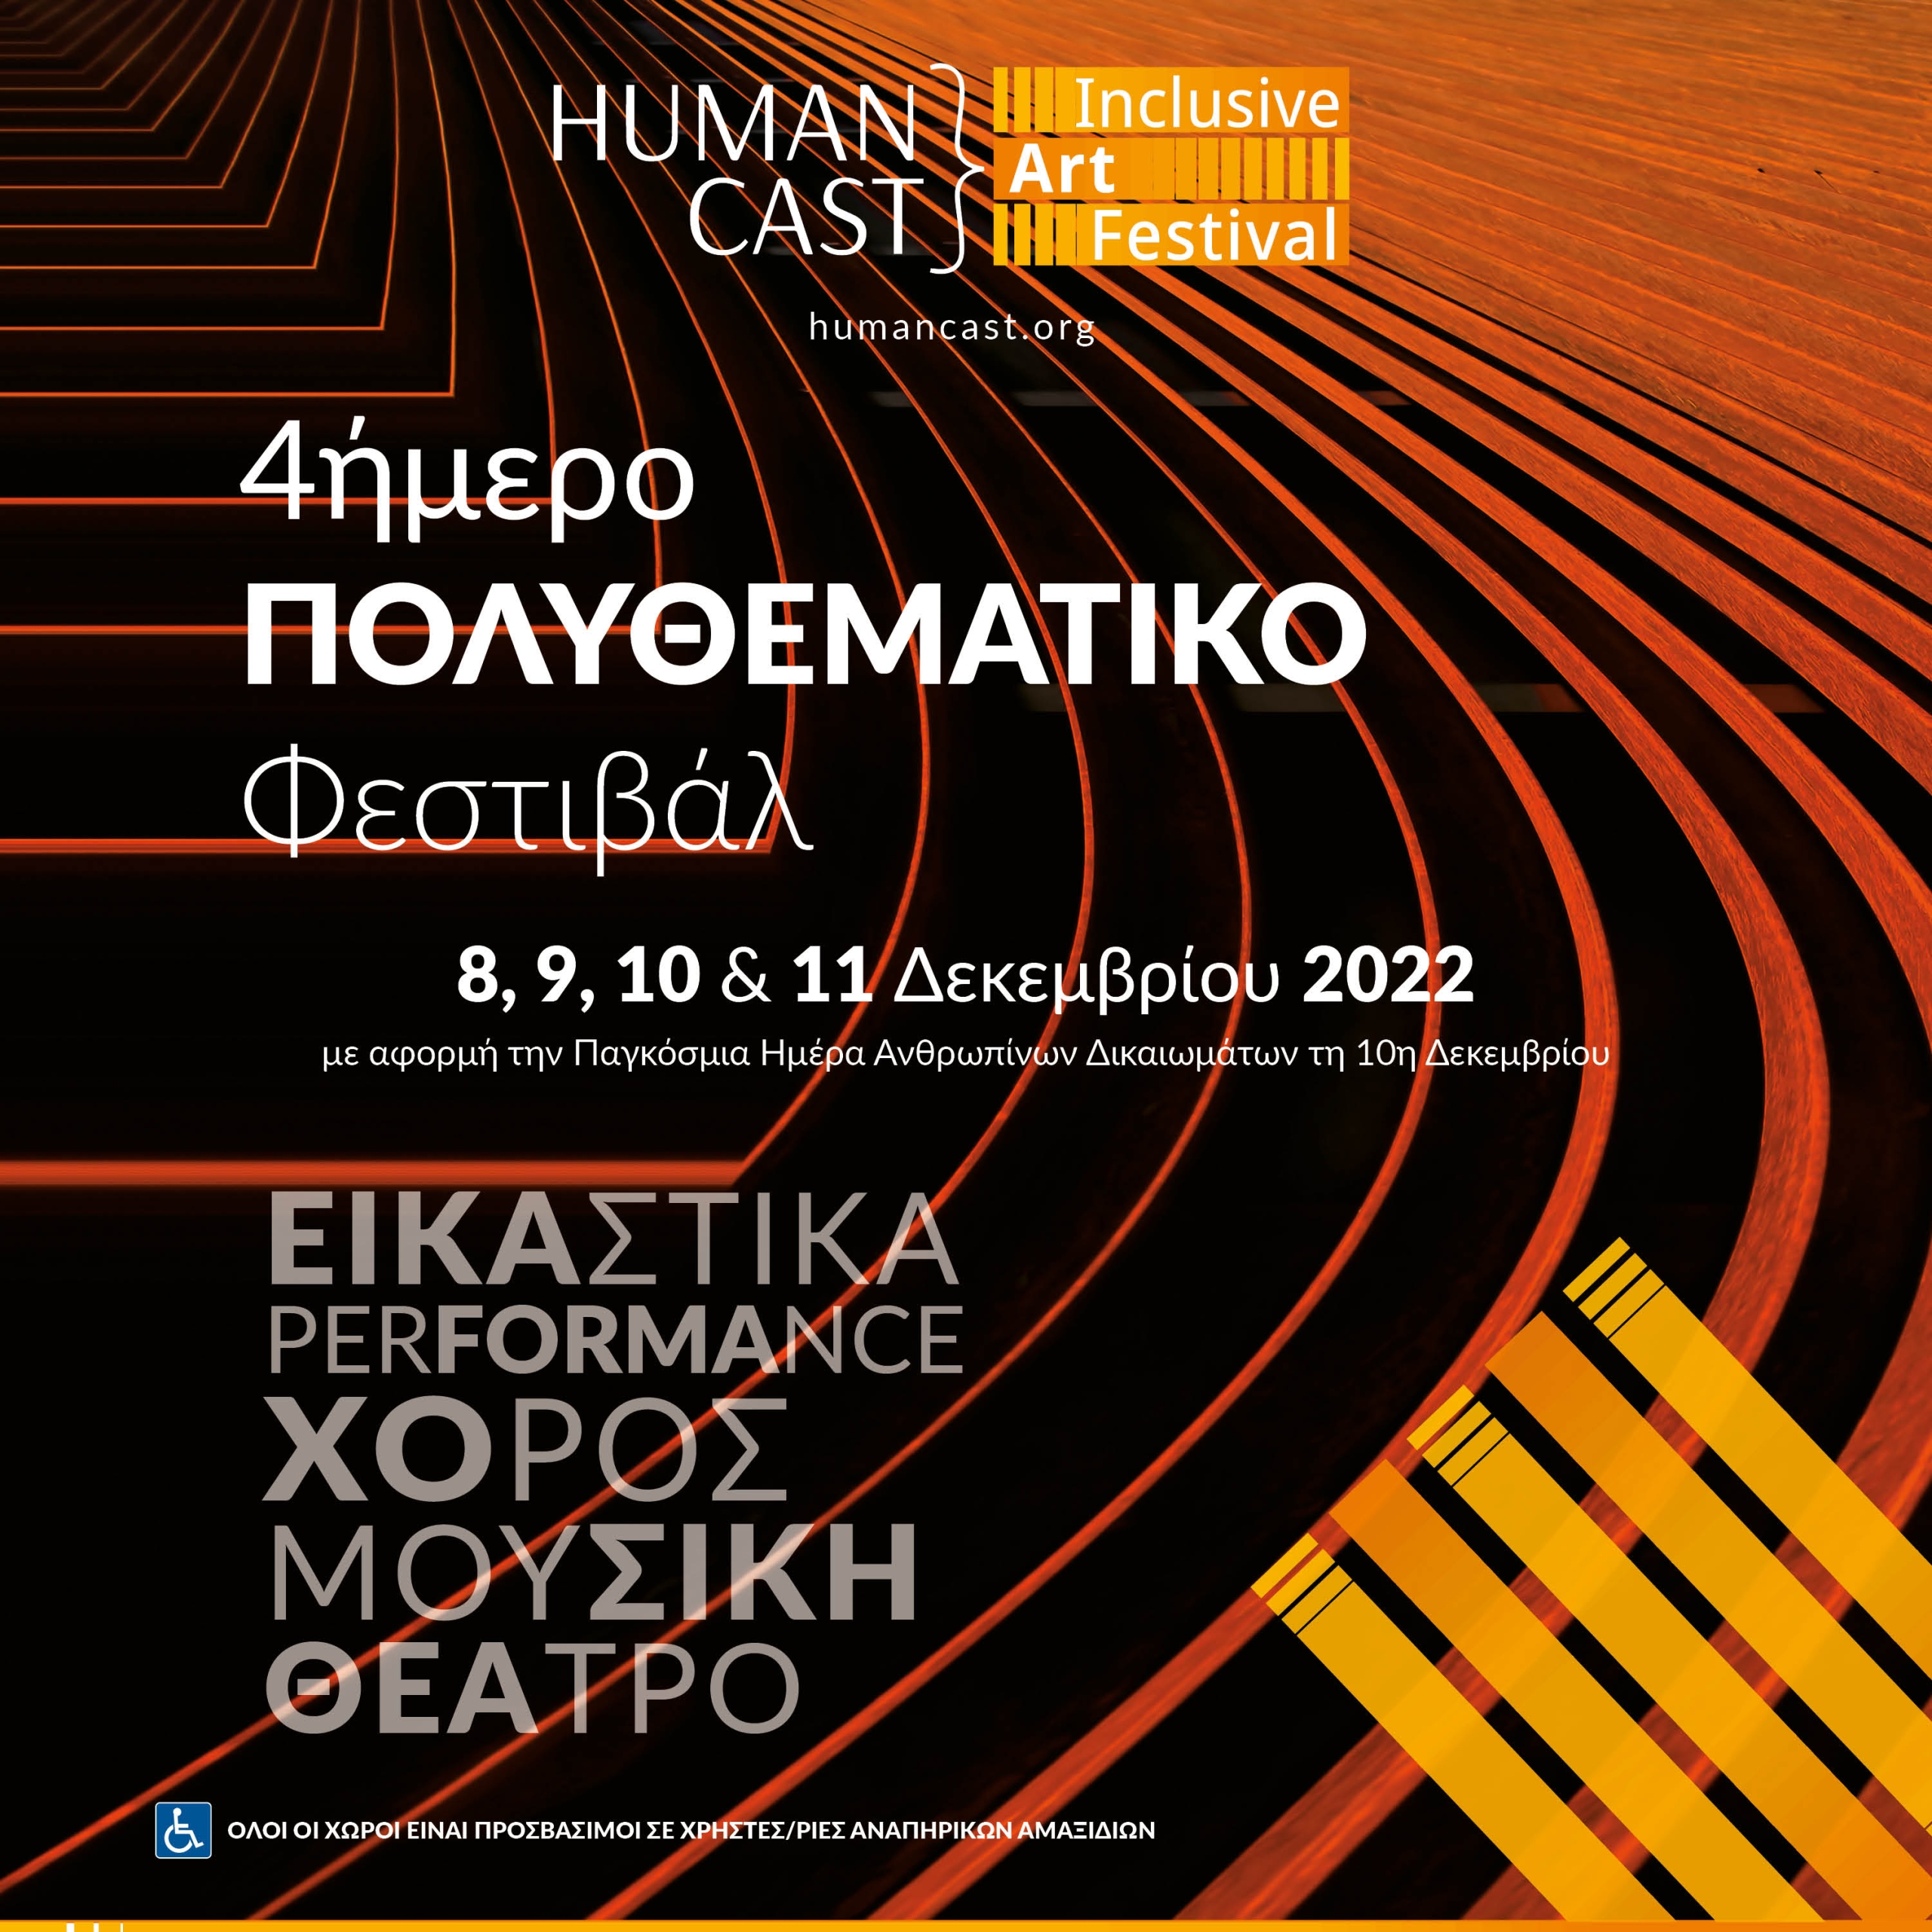  HUMAN CAST Inclusive Art Festival<br> Τετραήμερη γιορτή τέχνης και πολιτισμού στο κέντρο της Αθήνας με αφορμή την Παγκόσμια Ημέρα Ανθρωπίνων Δικαιωμάτων